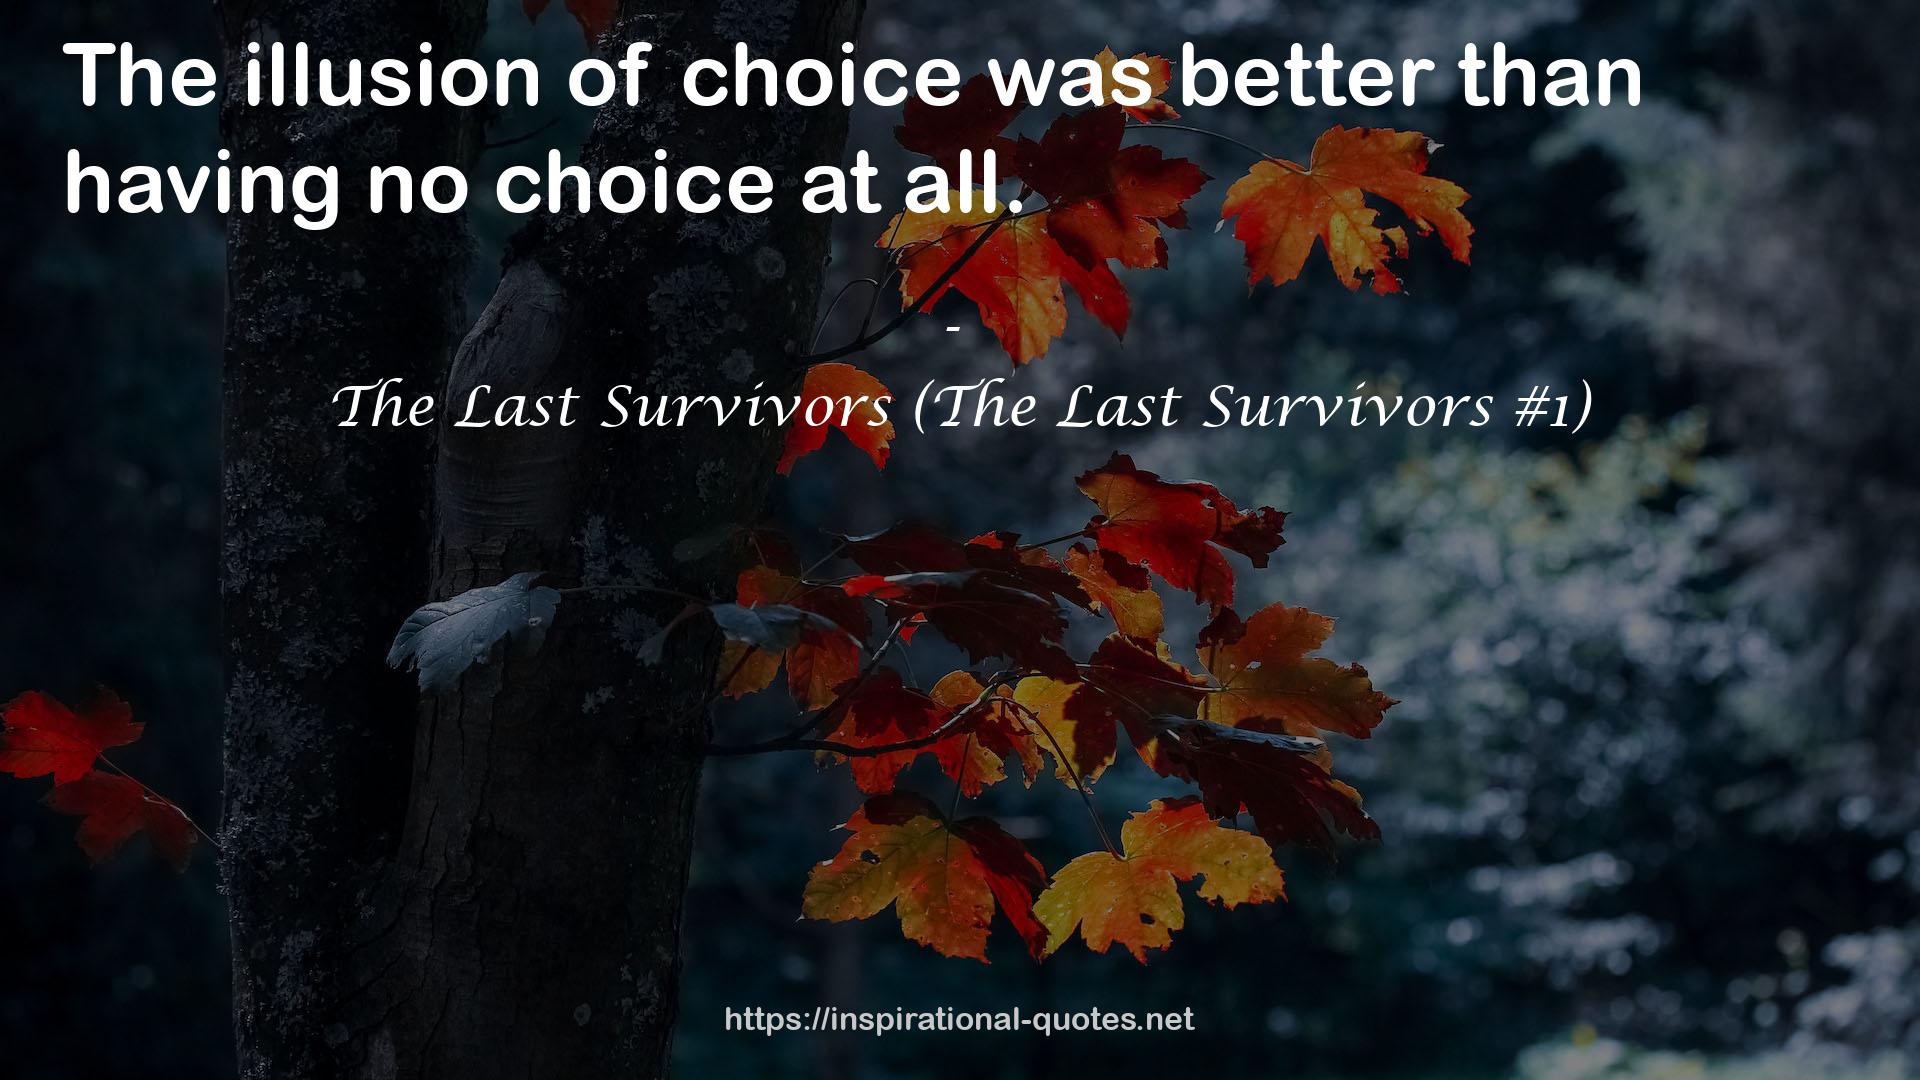 The Last Survivors (The Last Survivors #1) QUOTES